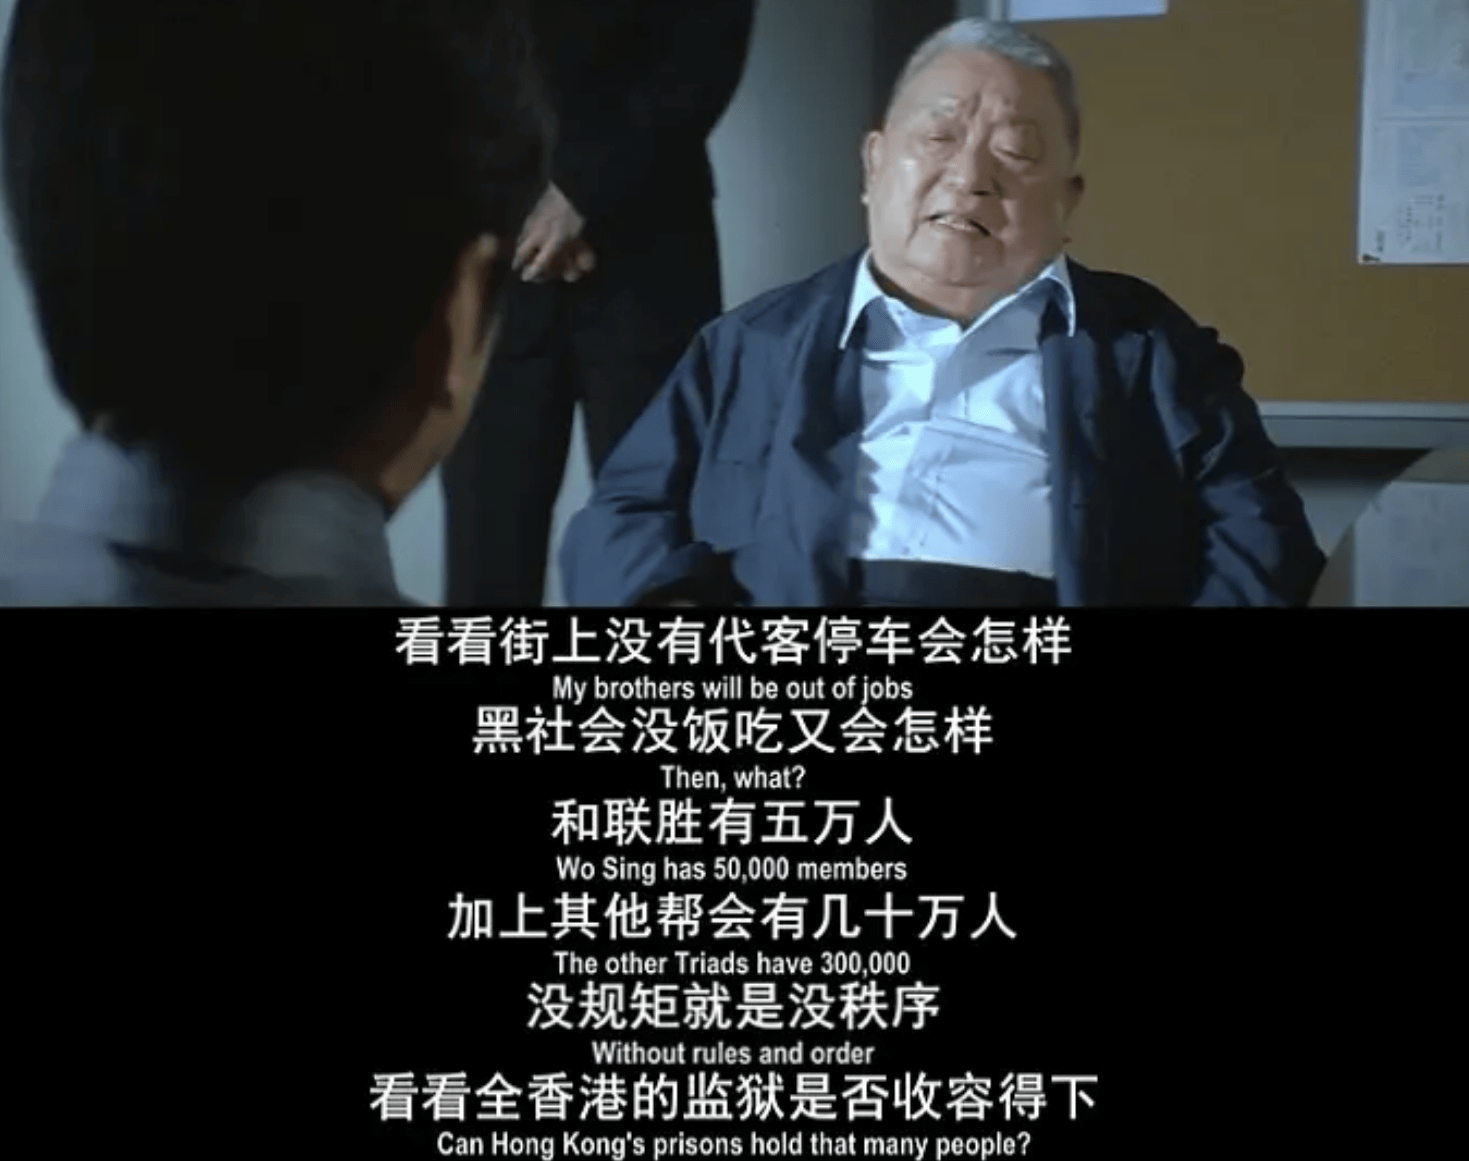 时隔20年,再看杜琪峰两部《黑社会》,仍是香港最杰出的黑帮电影